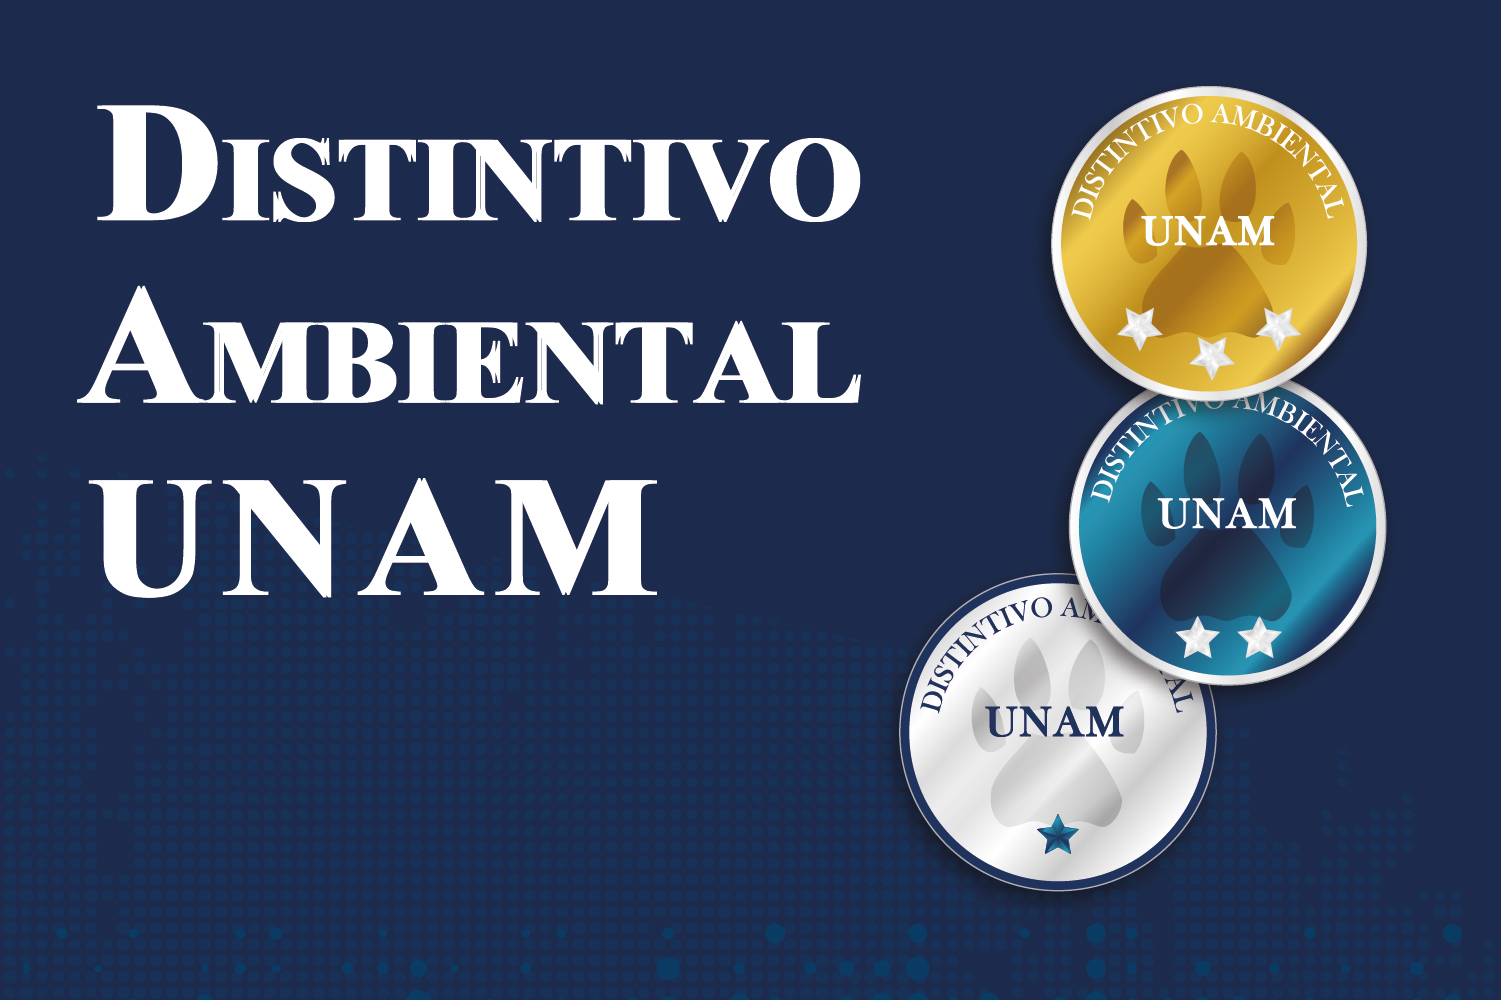 Distintivo Ambiental UNAM portada